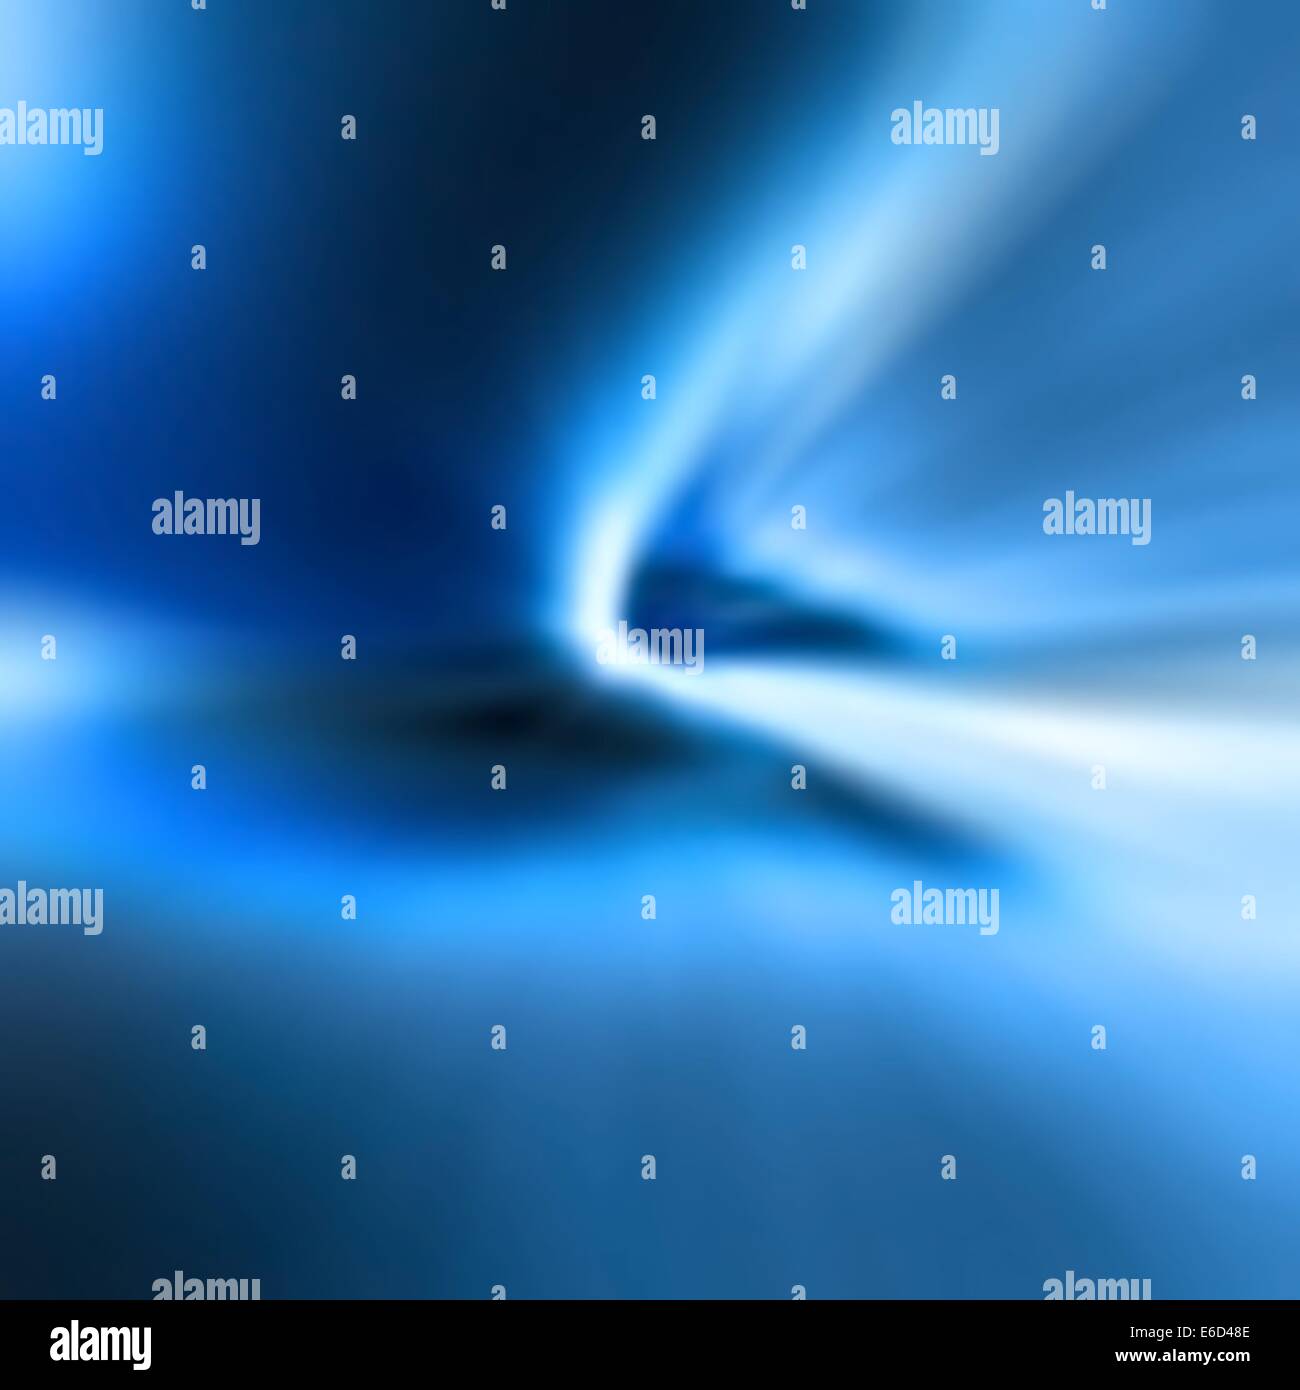 Vecteur modifiable blue abstract blur faites à l'aide d'un filet de dégradé Illustration de Vecteur